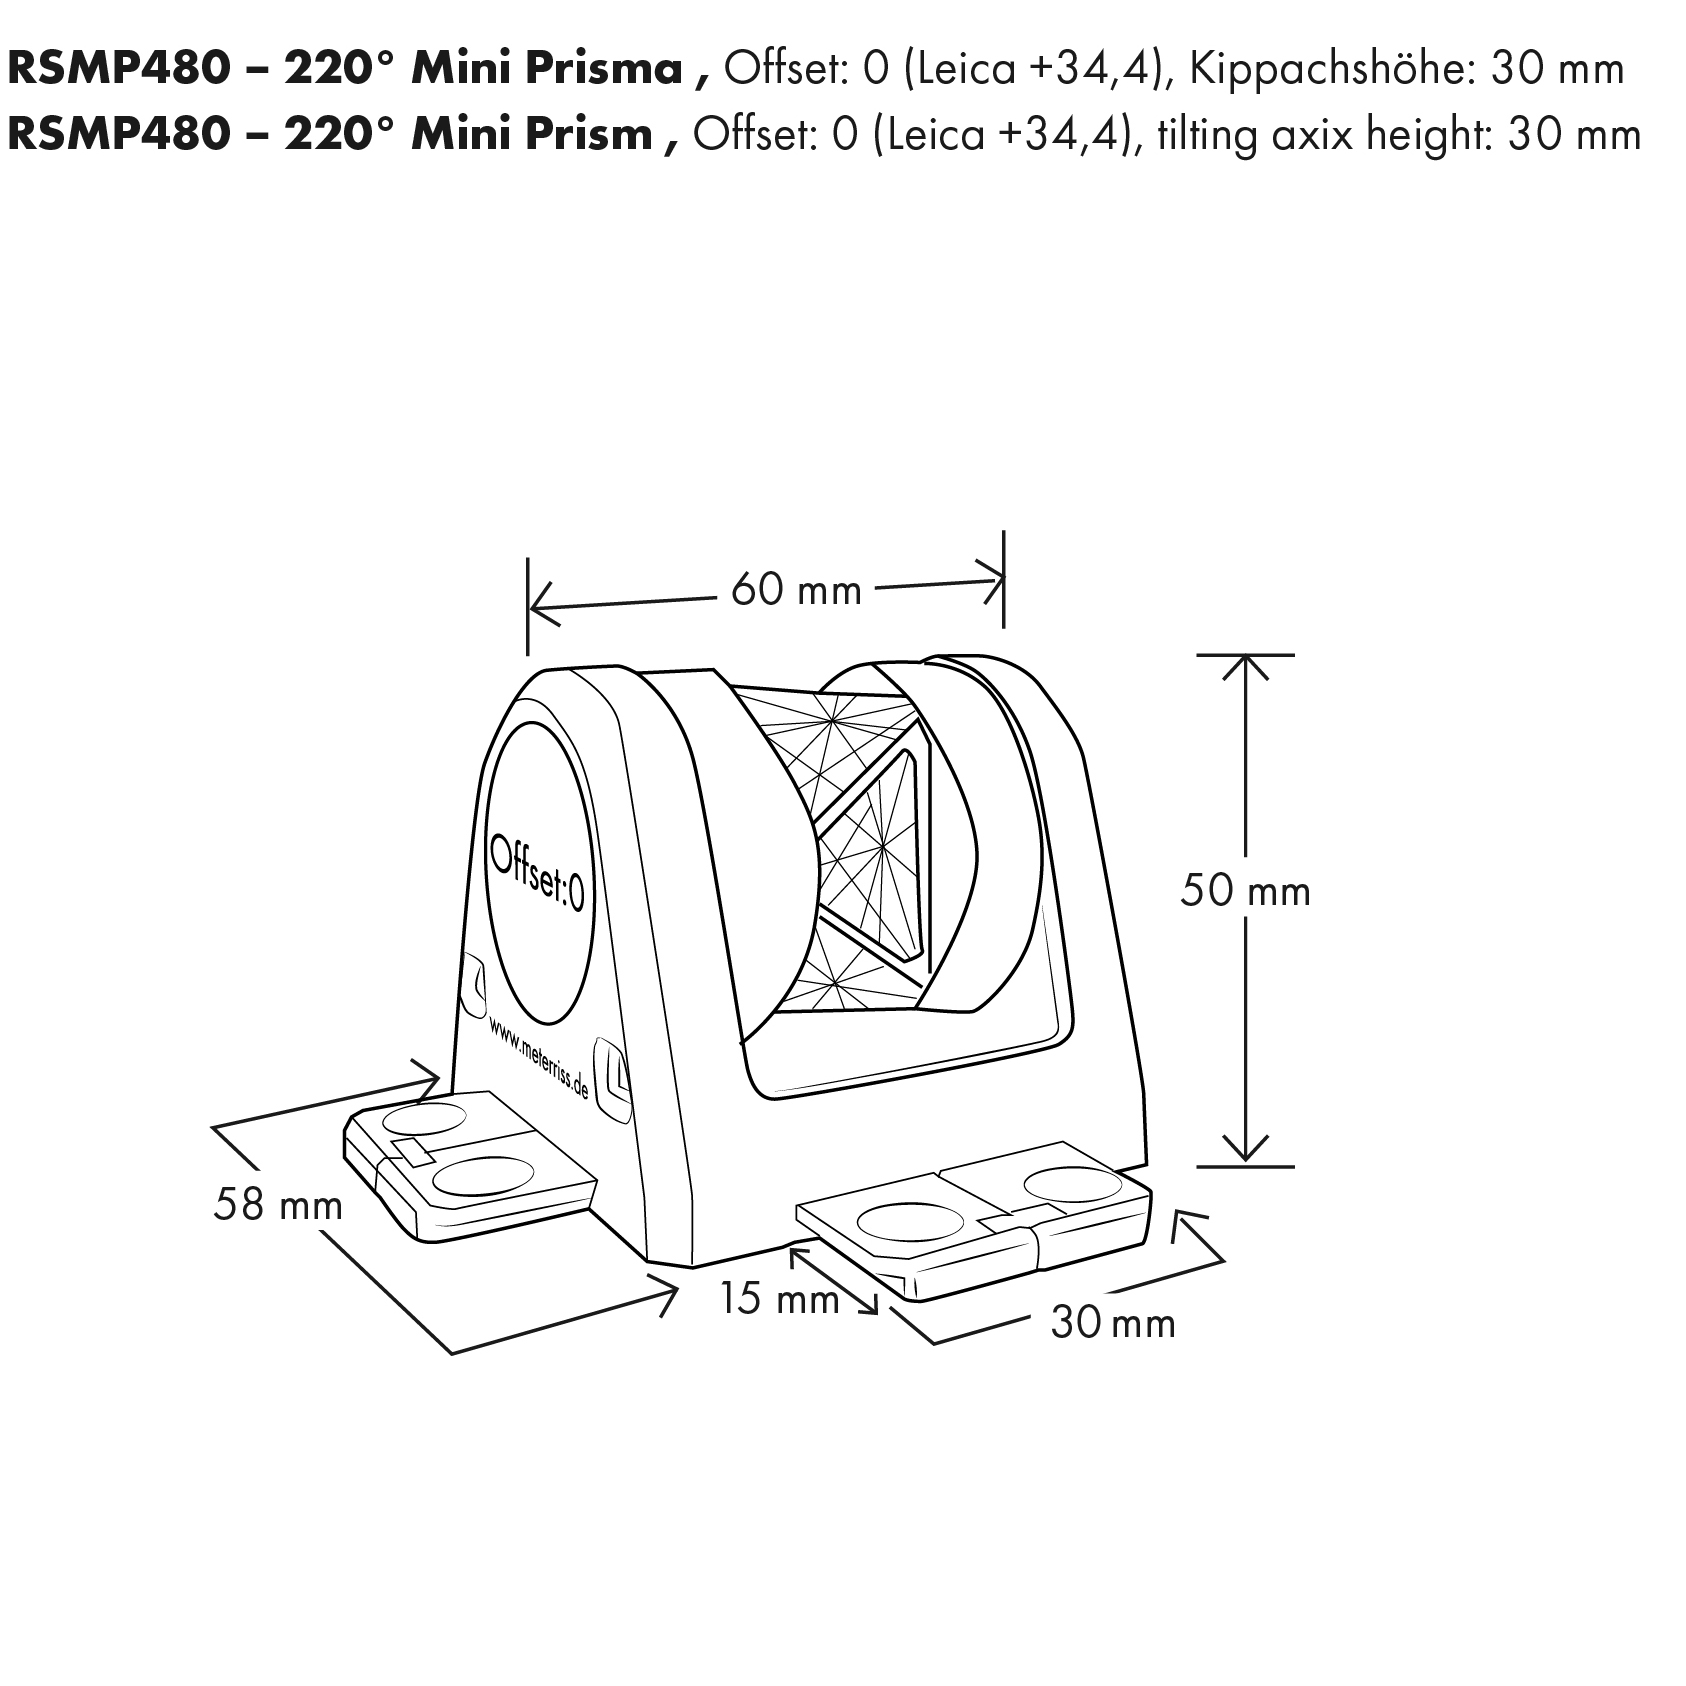 RSMP480 - 220° Mini Prisma, silberbeschichtet, von Rothbucher Systeme